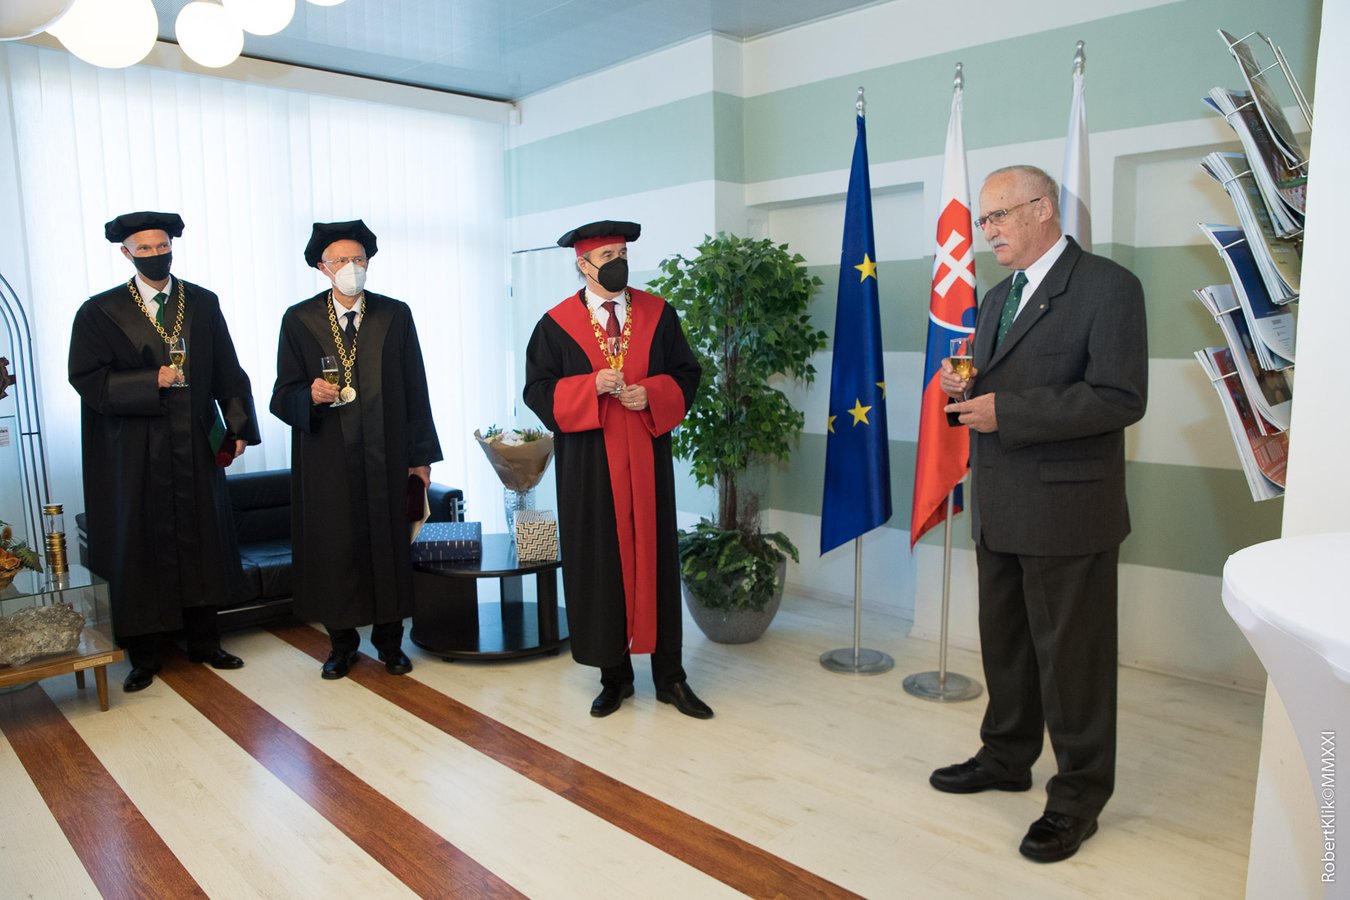 Udelenie čestných titulov Doctor honoris causa TUKE